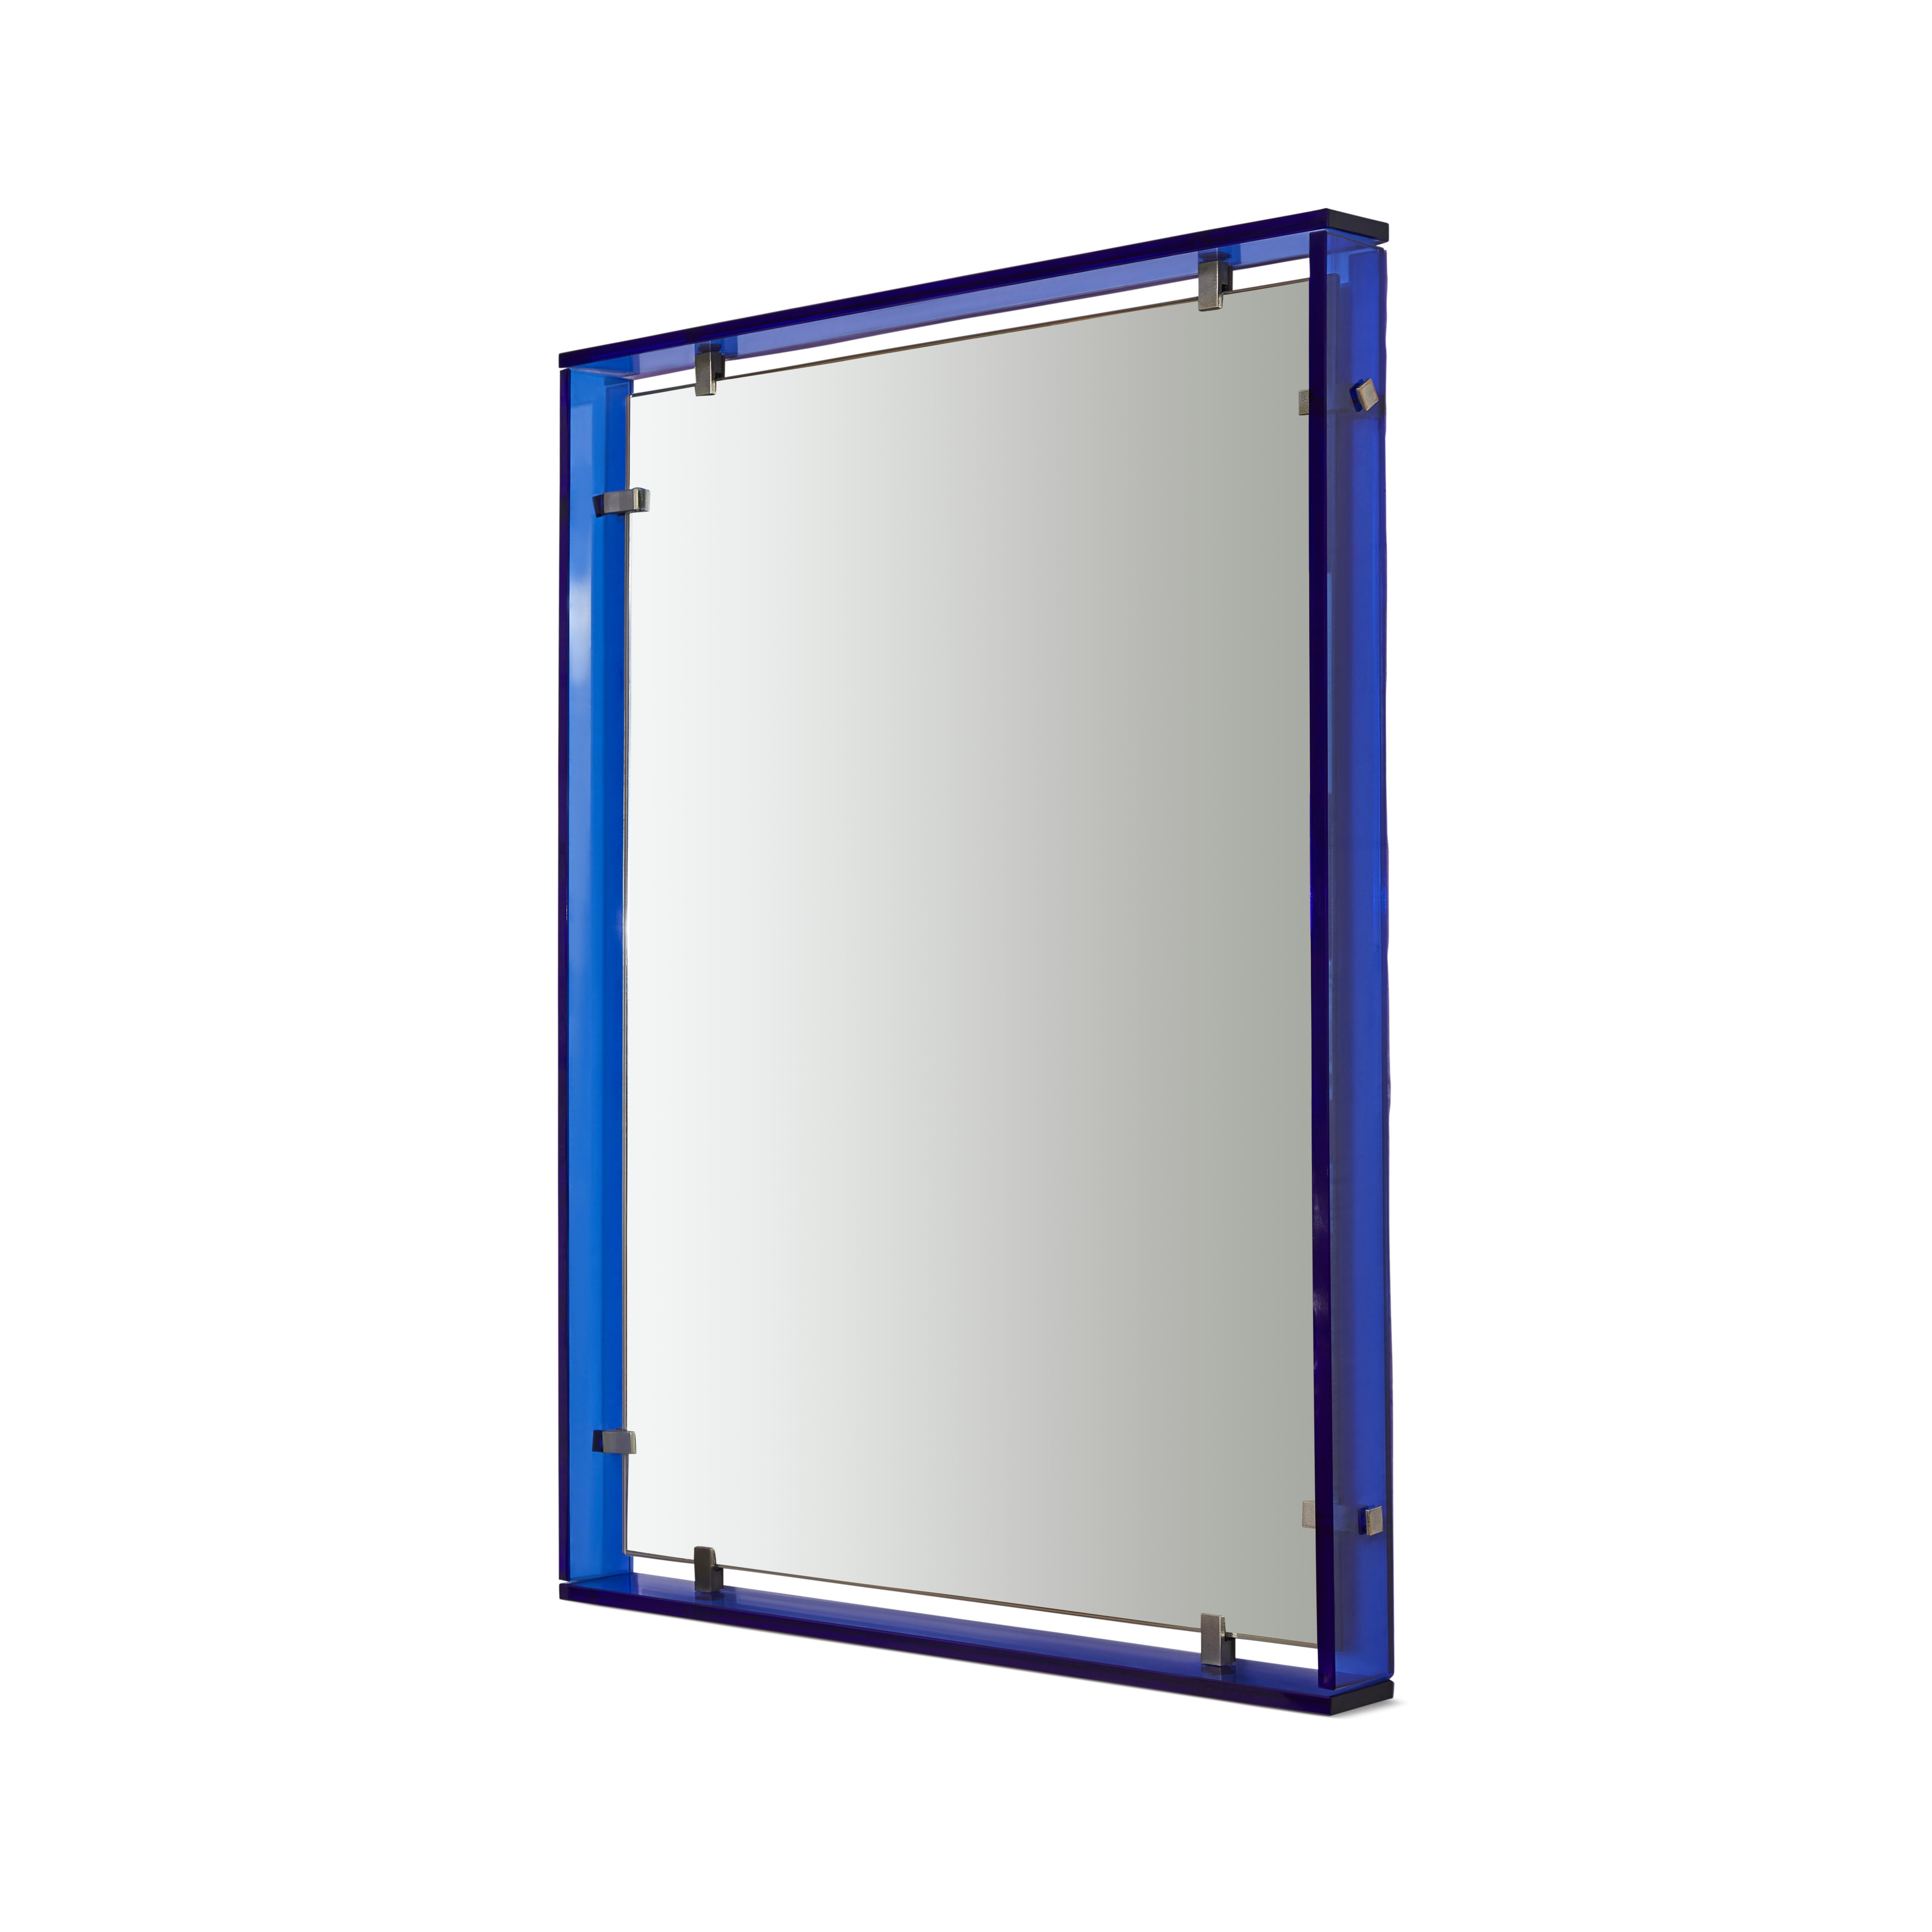 Miroir de belle qualité, Modèle 2014 conçu par Max Ingrand pour Fontana Arte. Le miroir flottant est entouré d'un verre bleu cobalt et les fixations sont en laiton nickelé. Il s'agit d'un miroir de la plus haute qualité et originalité.Production de